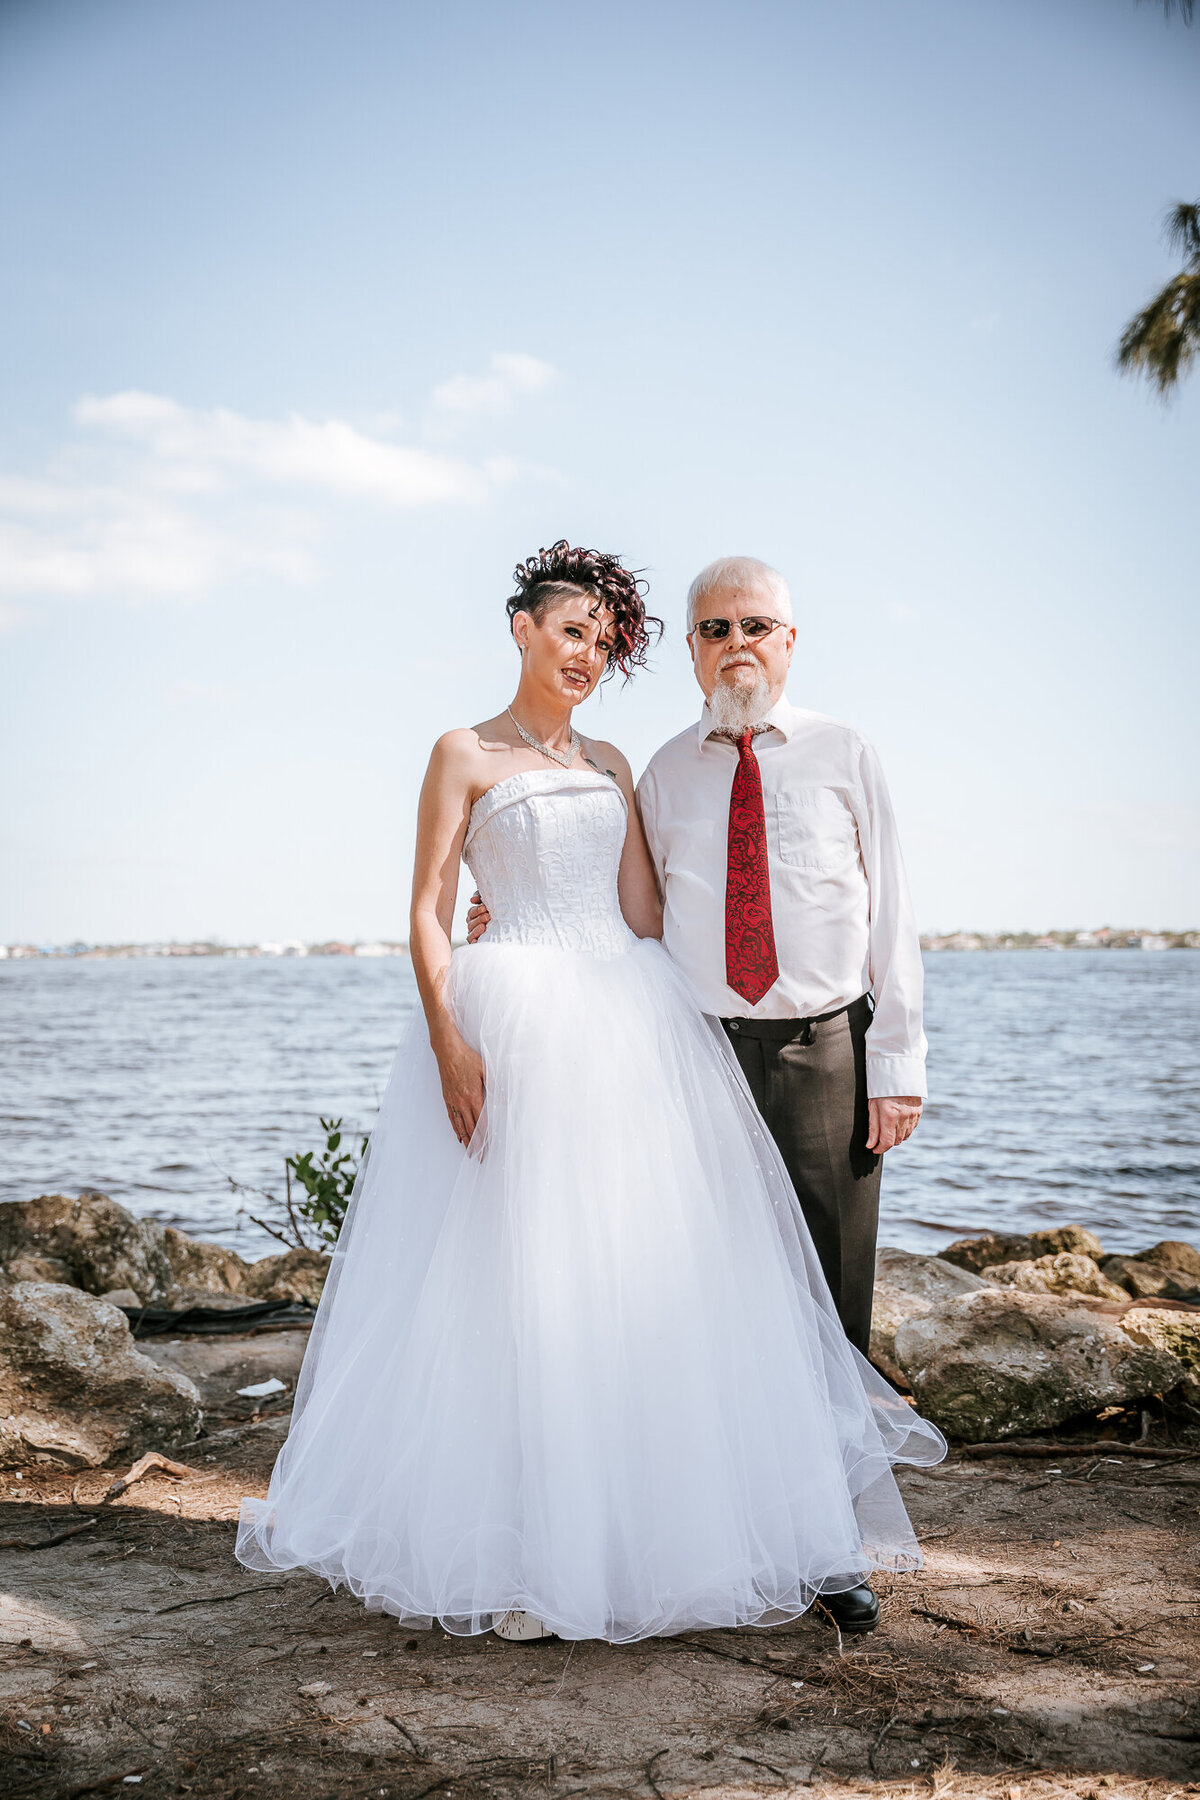 Southwest Florida wedding photographers - Fort Myers Wedding Photographer -4